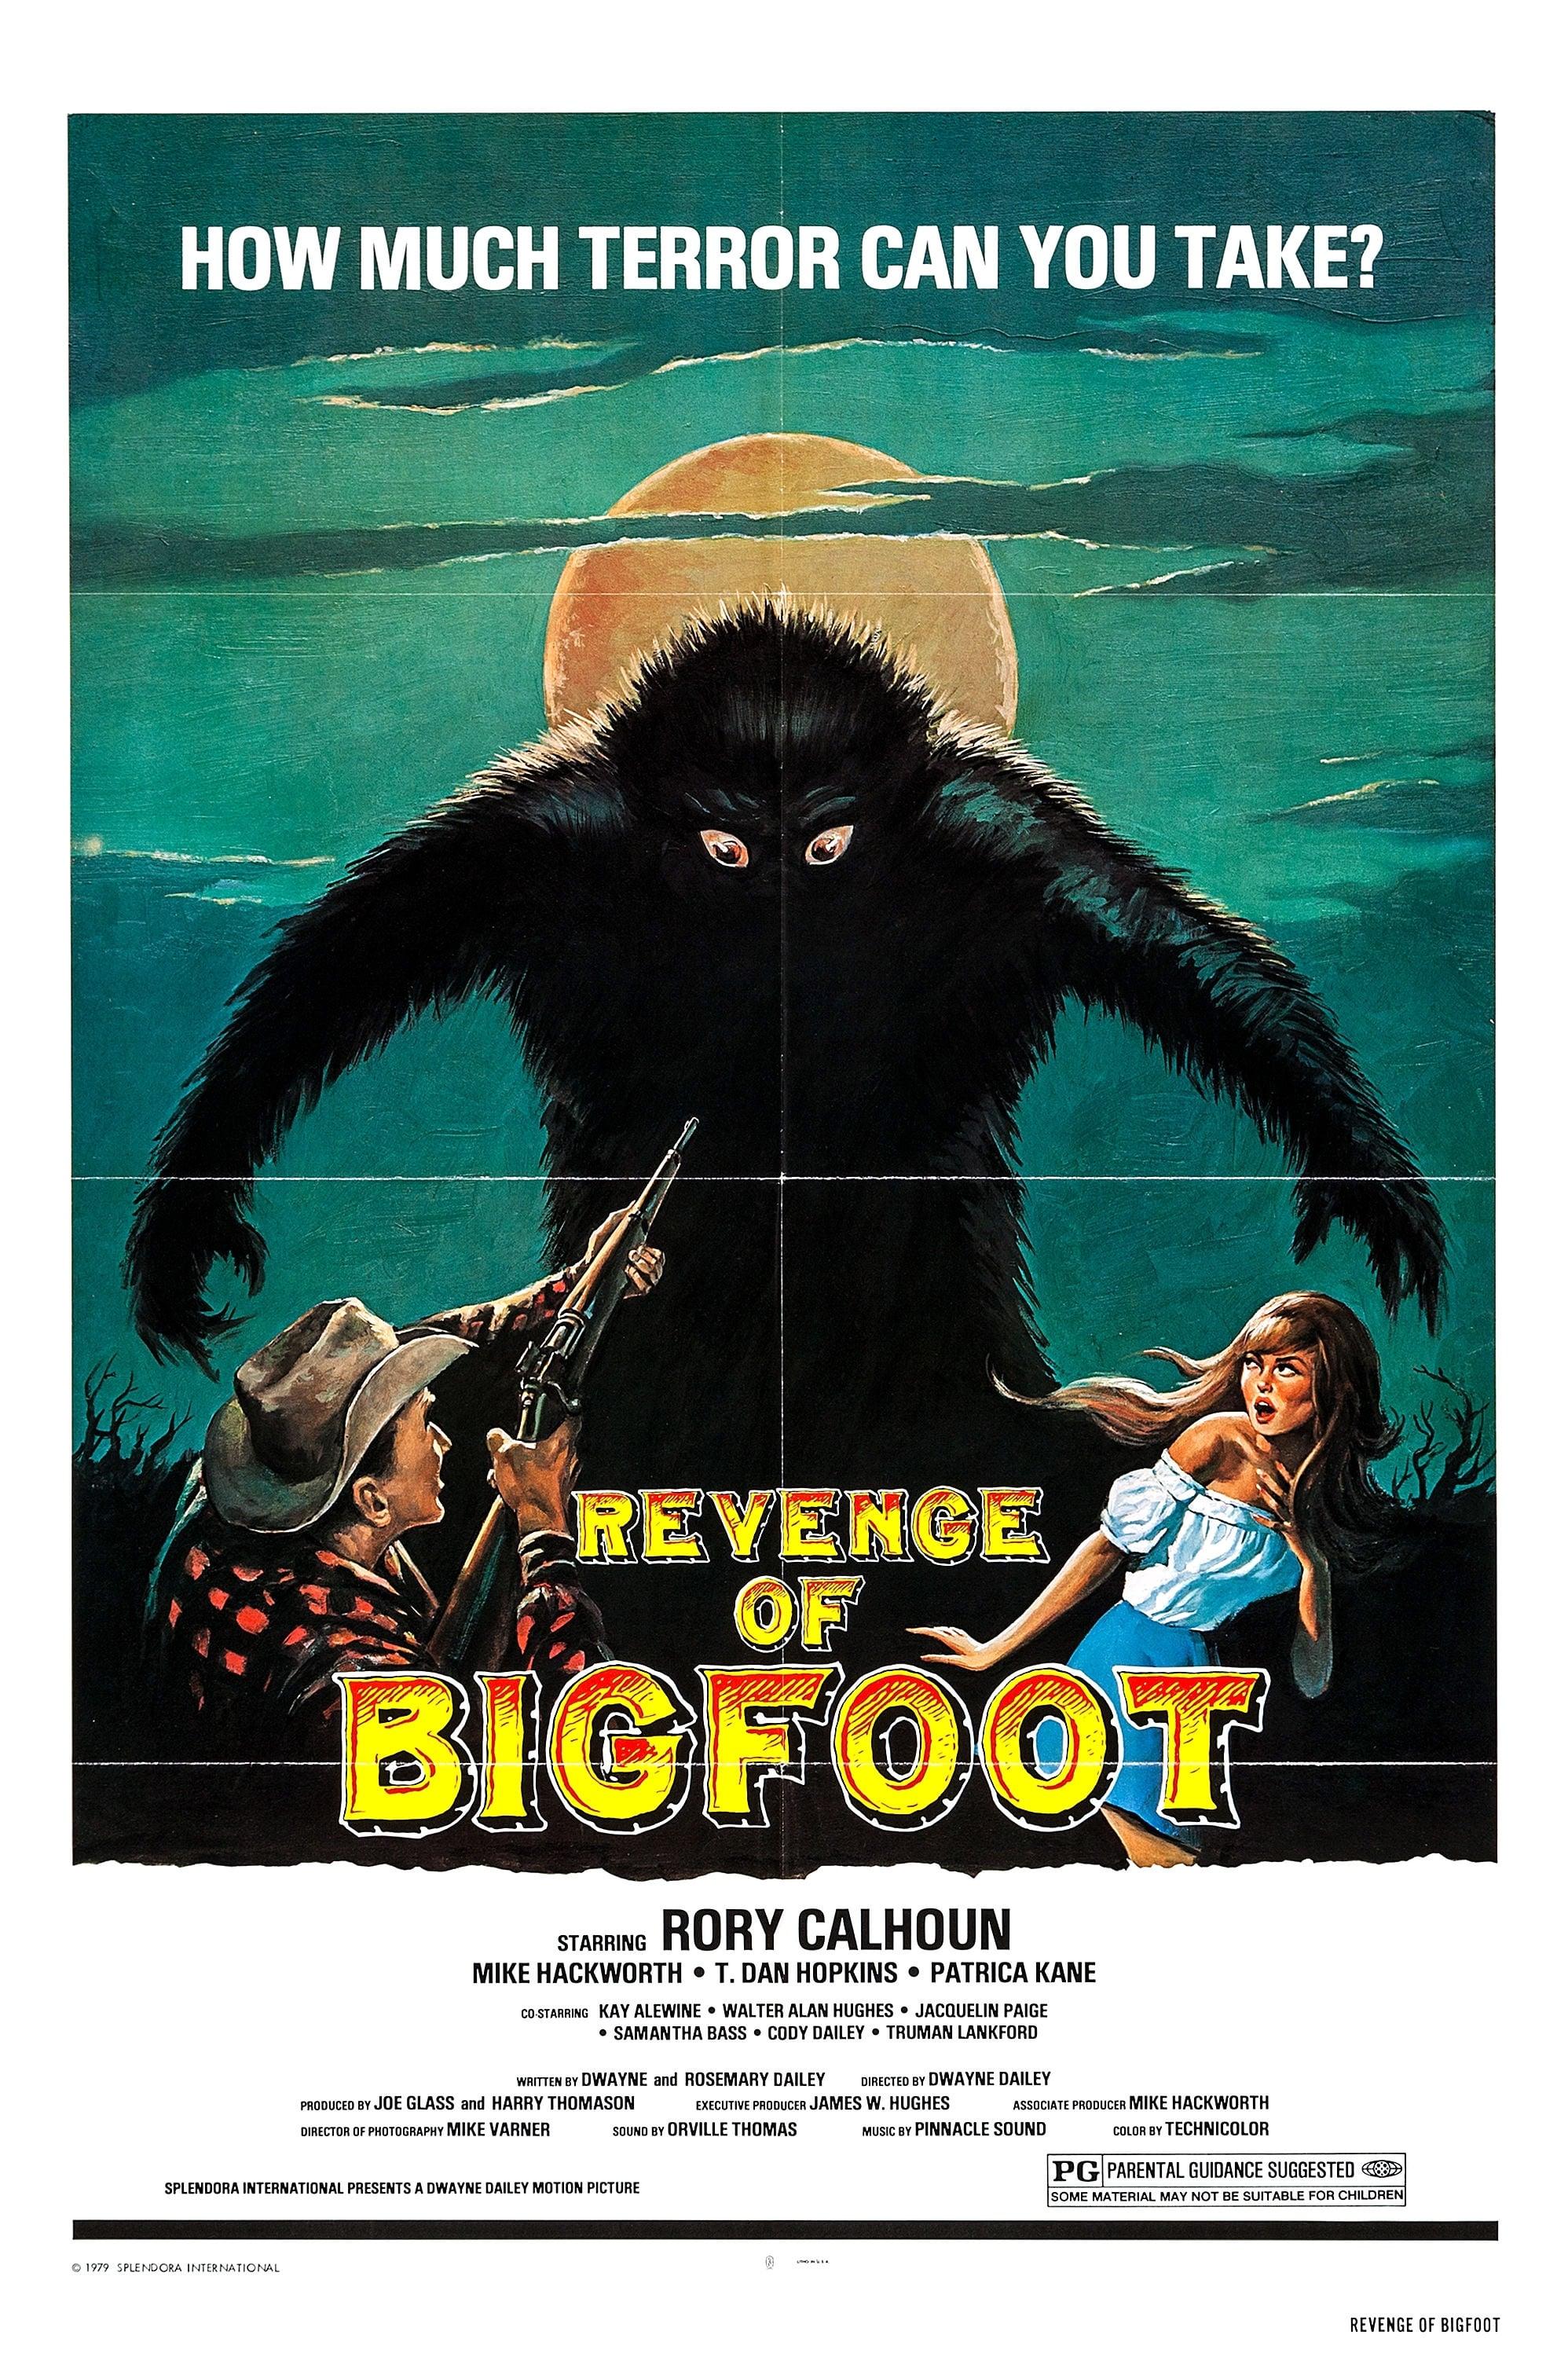 Revenge of Bigfoot poster